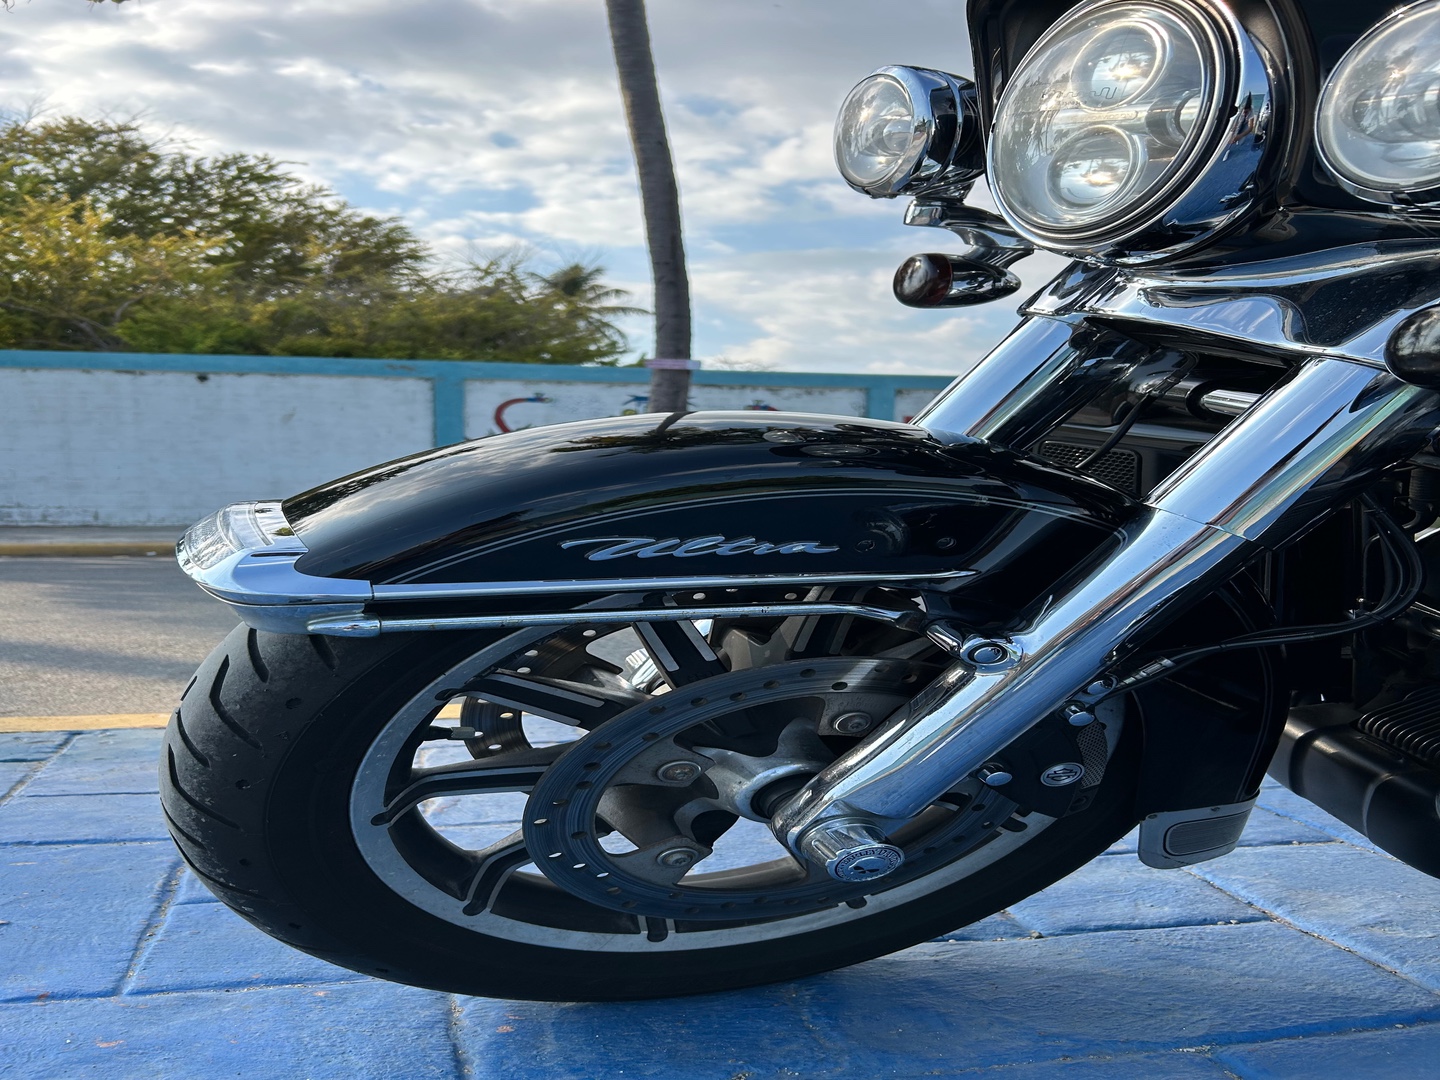 motores y pasolas - Harley Davidson ultra Glide año 2014 4